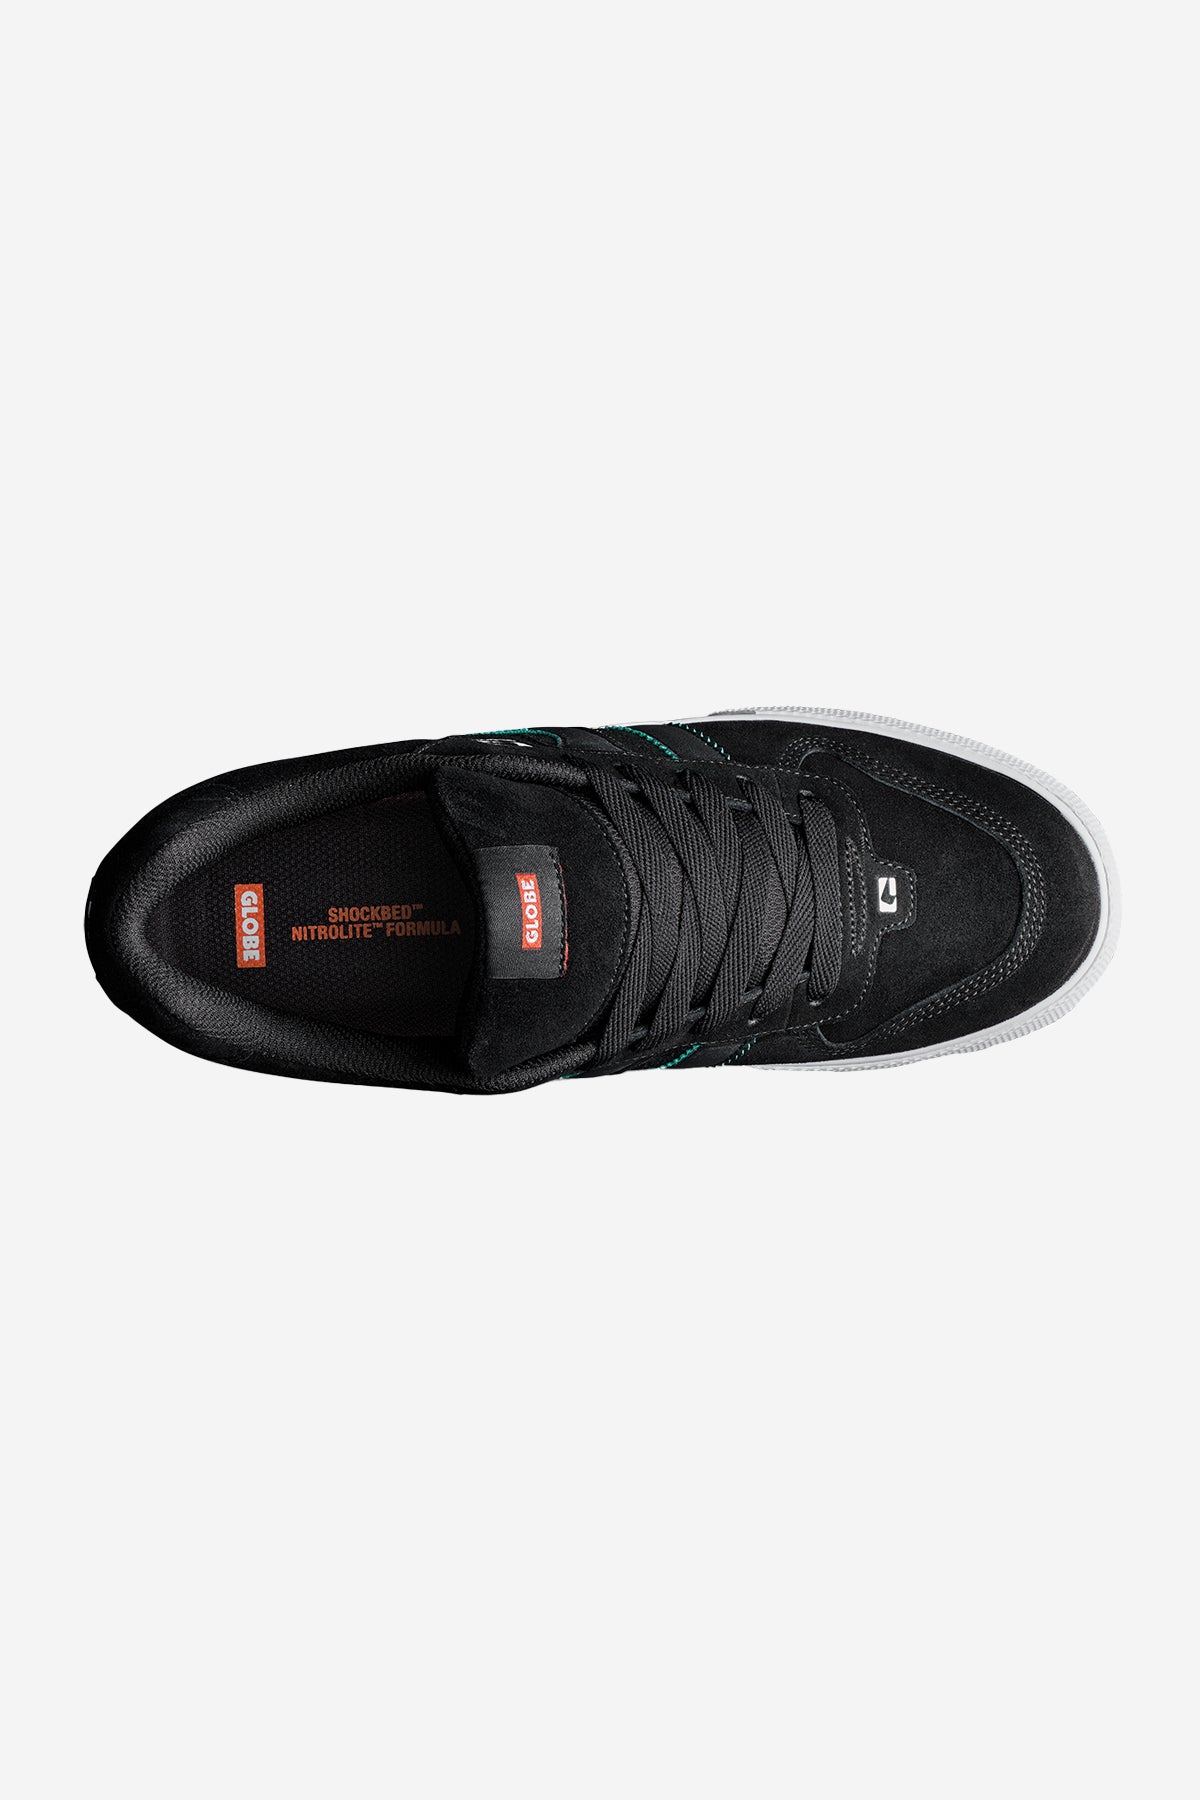 encore-2 noir white cobalt skateboard chaussures